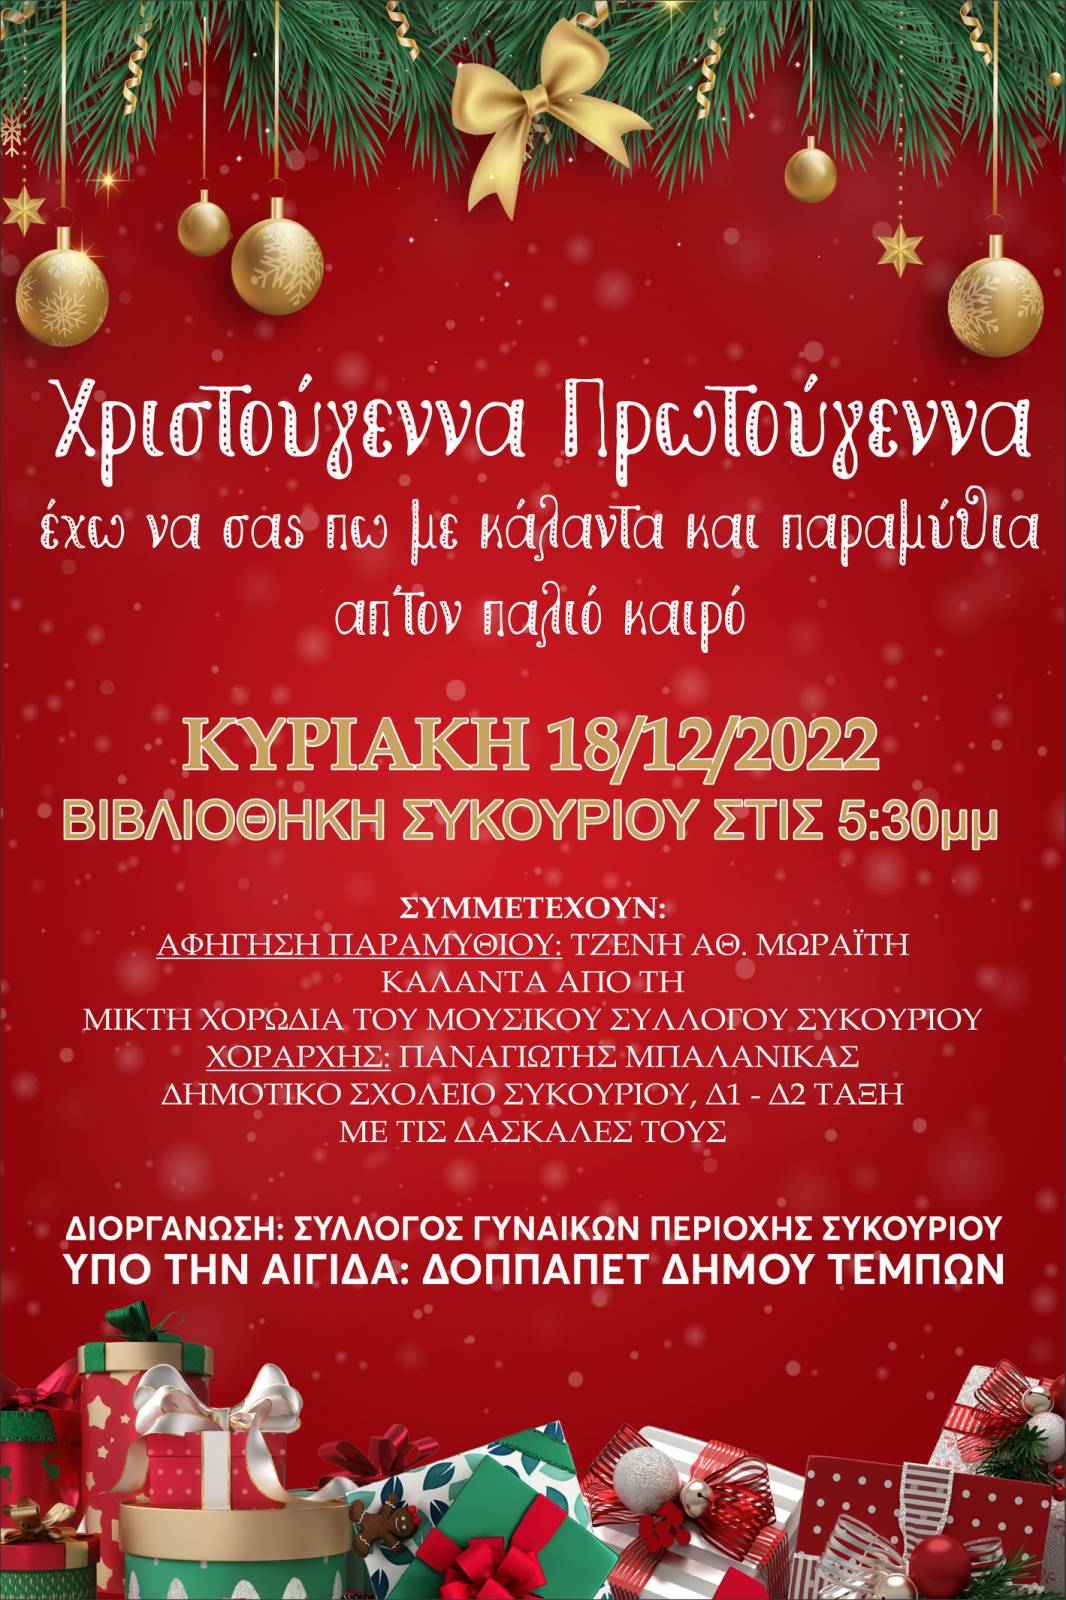 Χριστουγεννιάτικη εκδήλωση από τον Σύλλογο Γυναικών περιοχής Συκουρίου